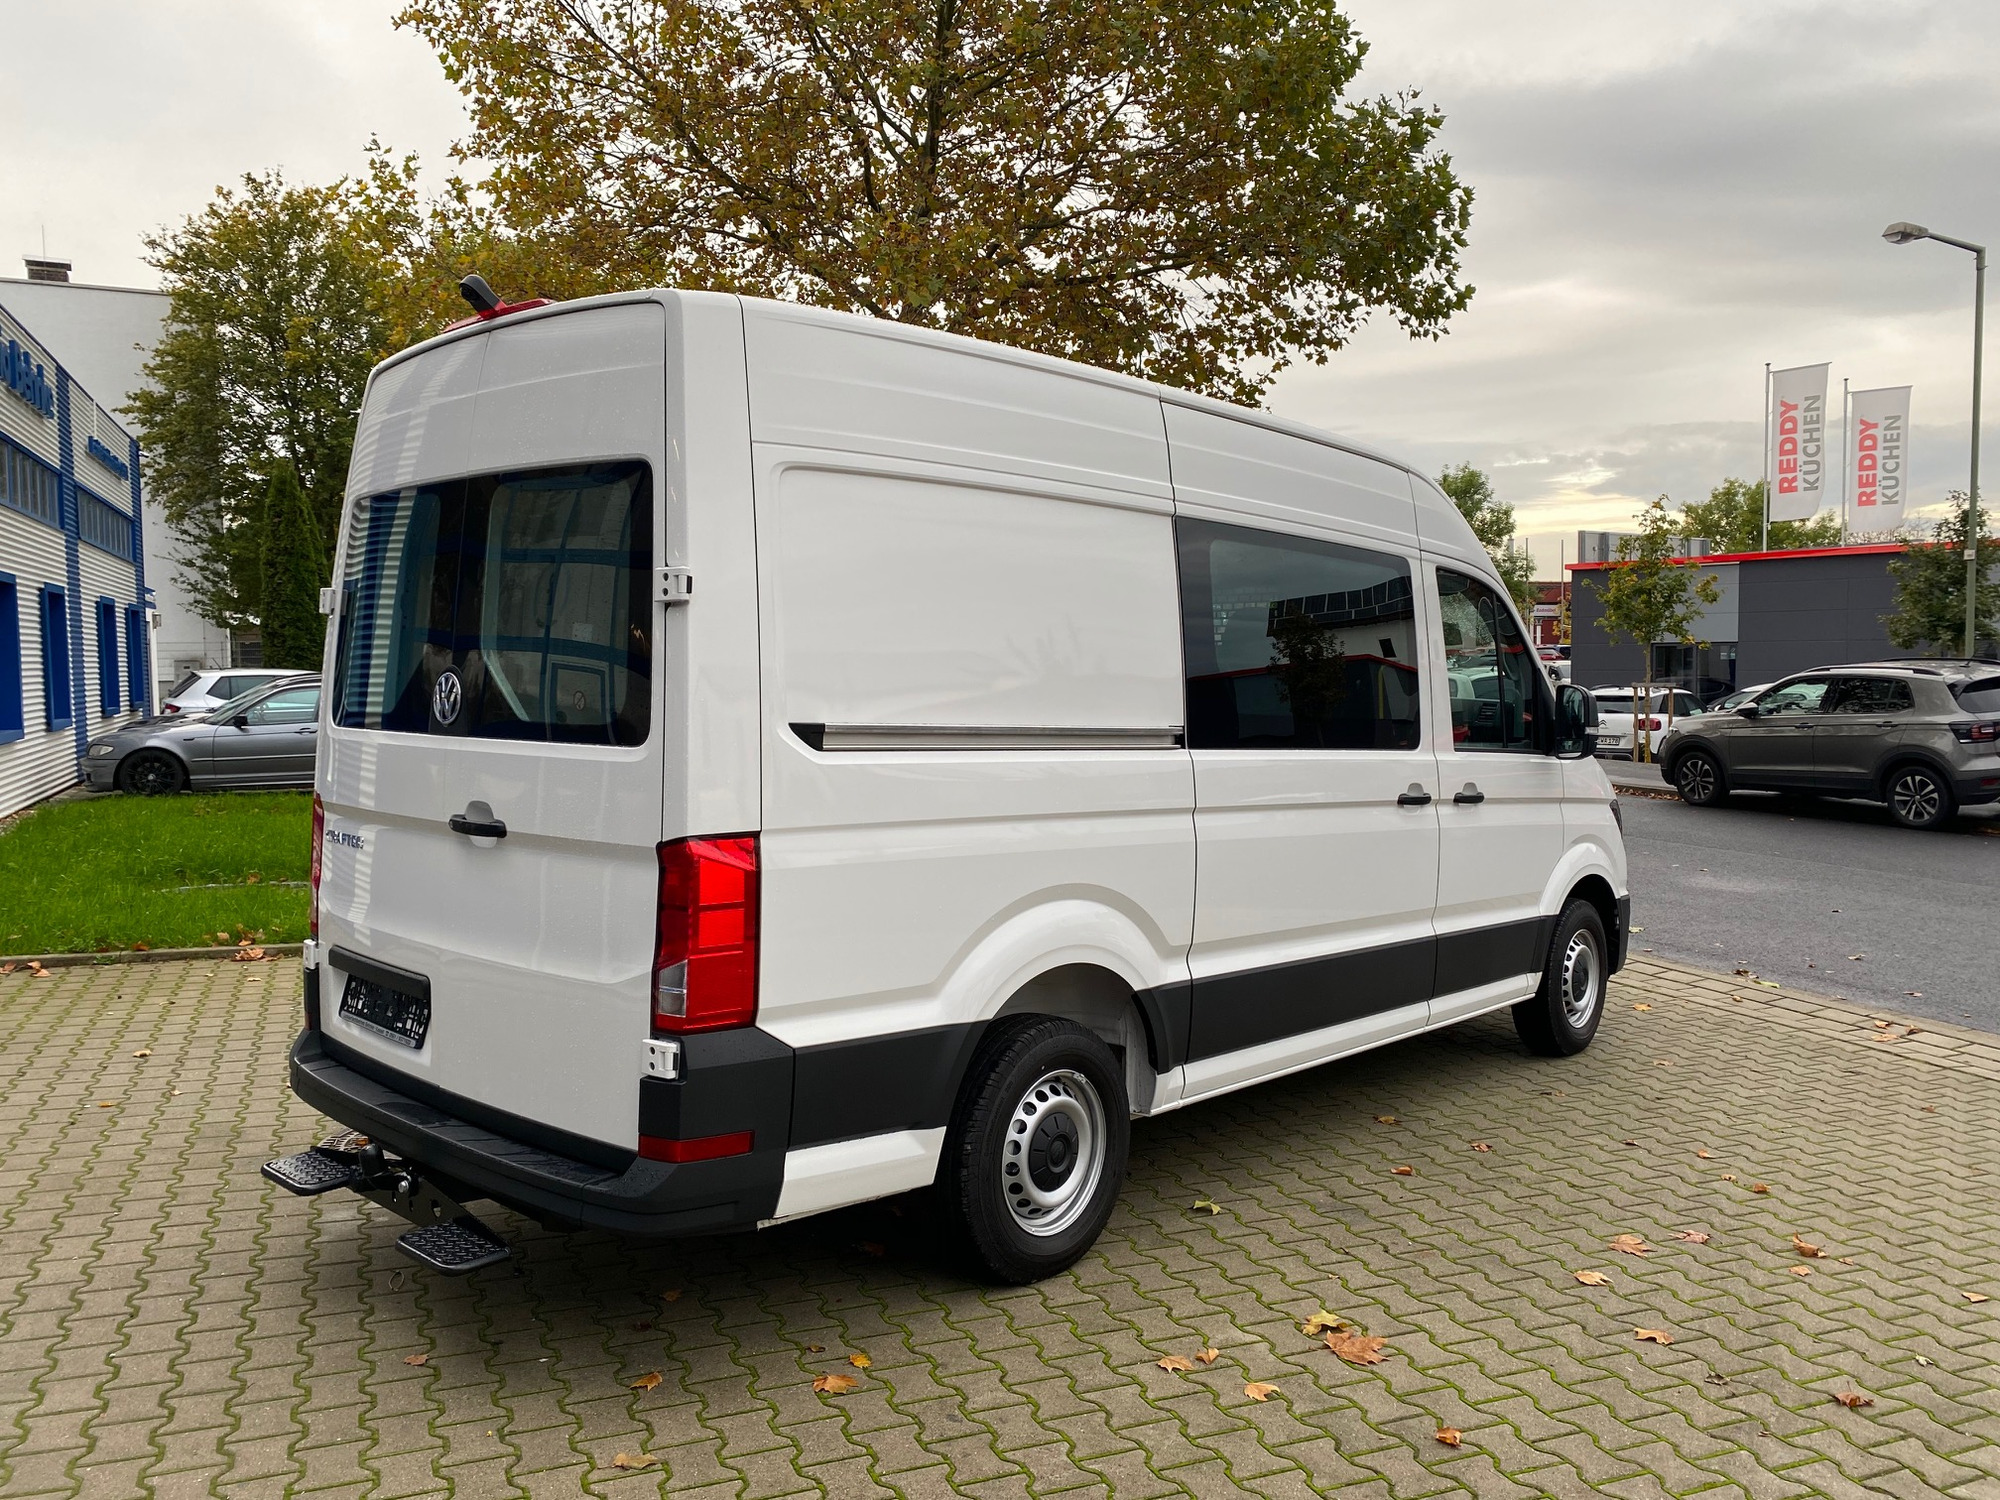 Silvio Behnke Kfz Handel und Vermietung GmbH - vehicles for sale undefined: picture 2